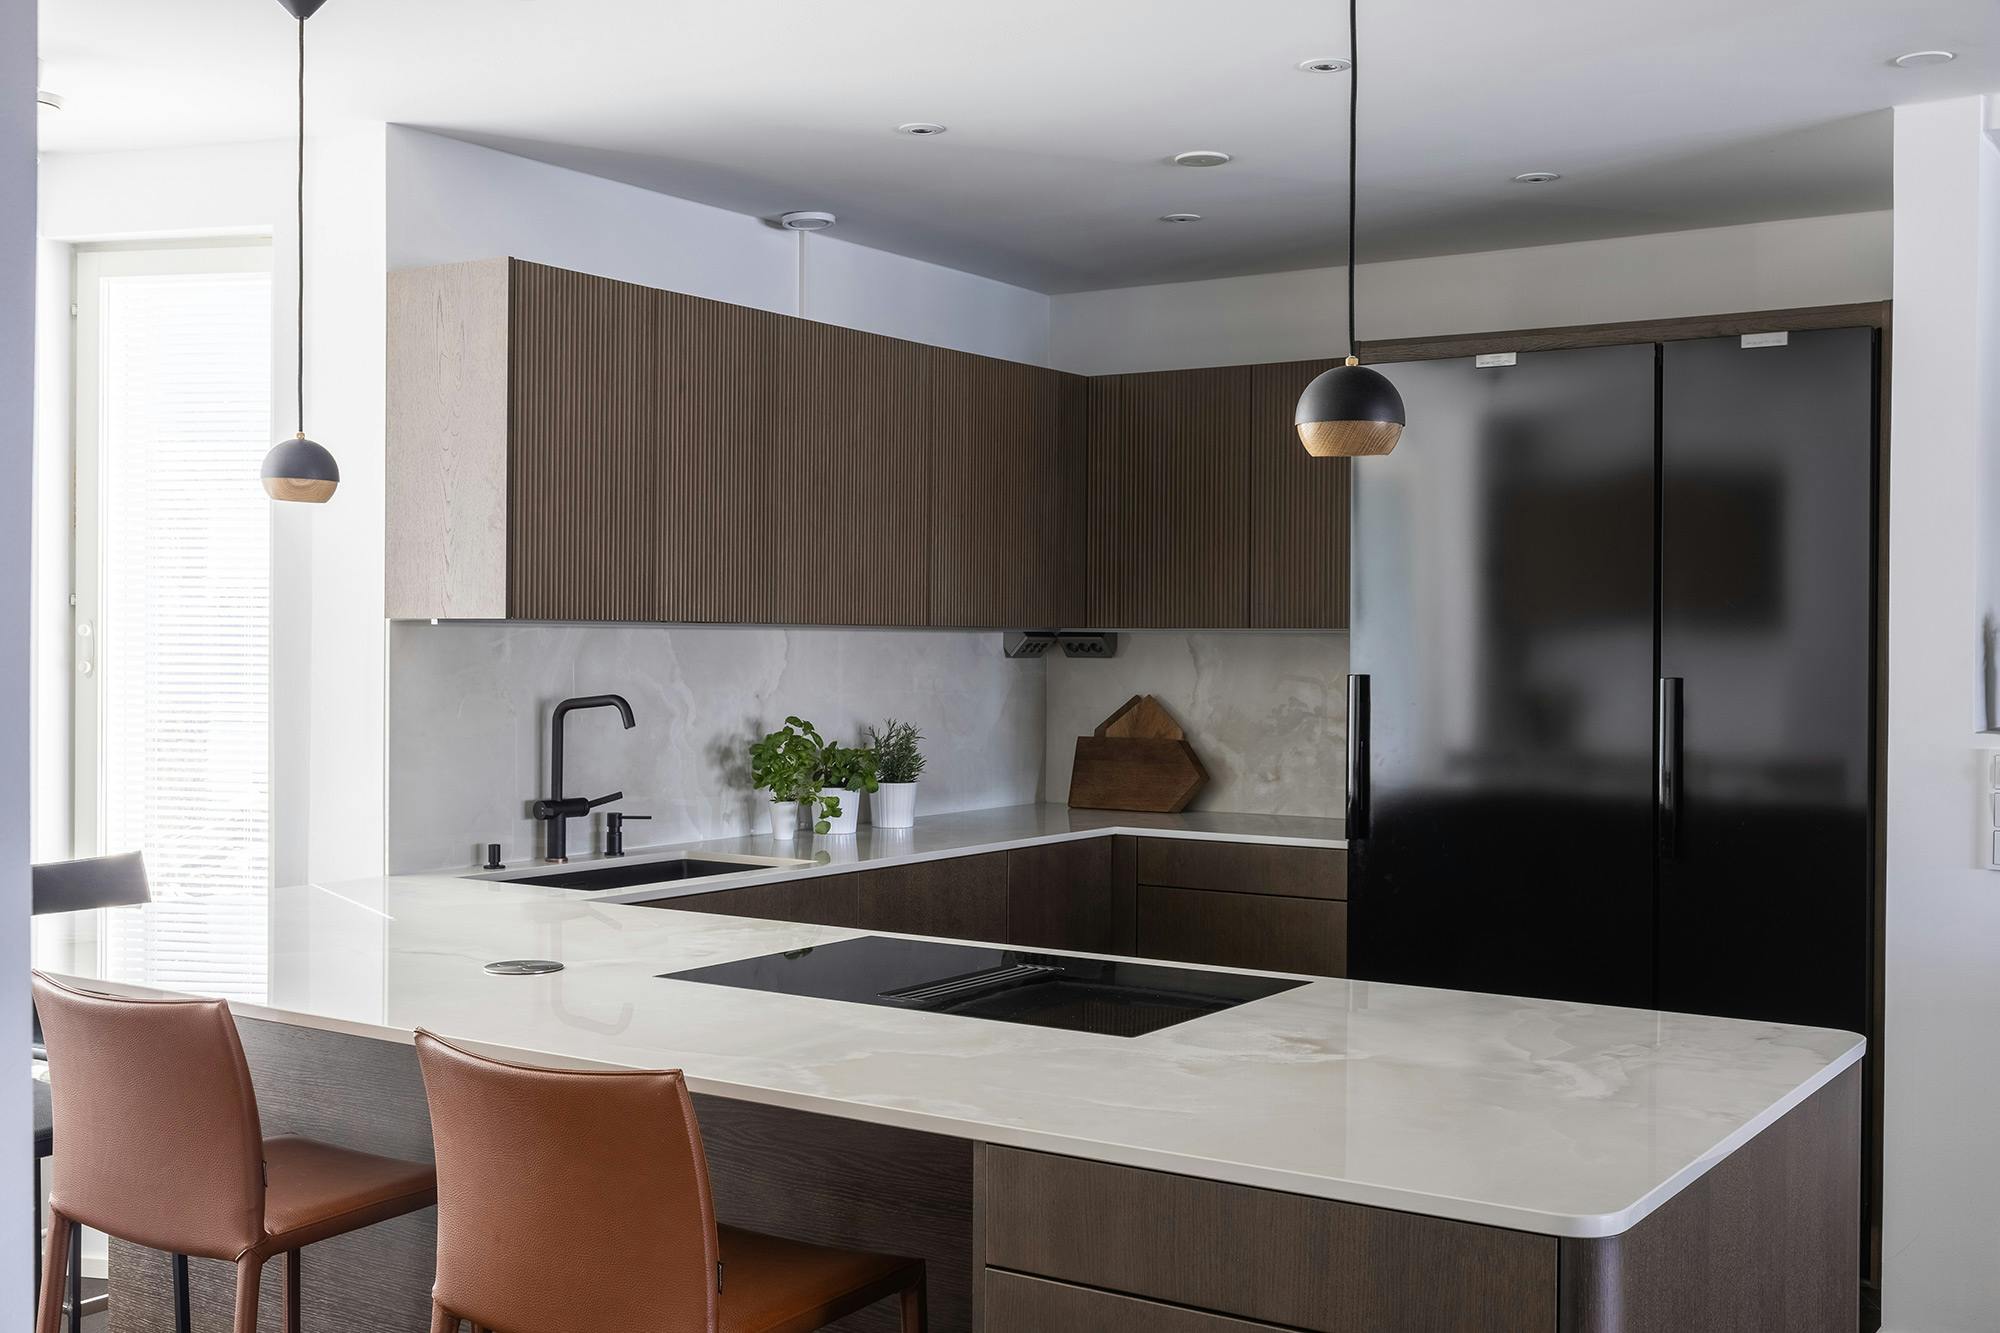 Numéro d'image 42 de la section actuelle de DKTN Arga creates an elegant atmosphere in this open plan kitchen with a minimalist approach de Cosentino France